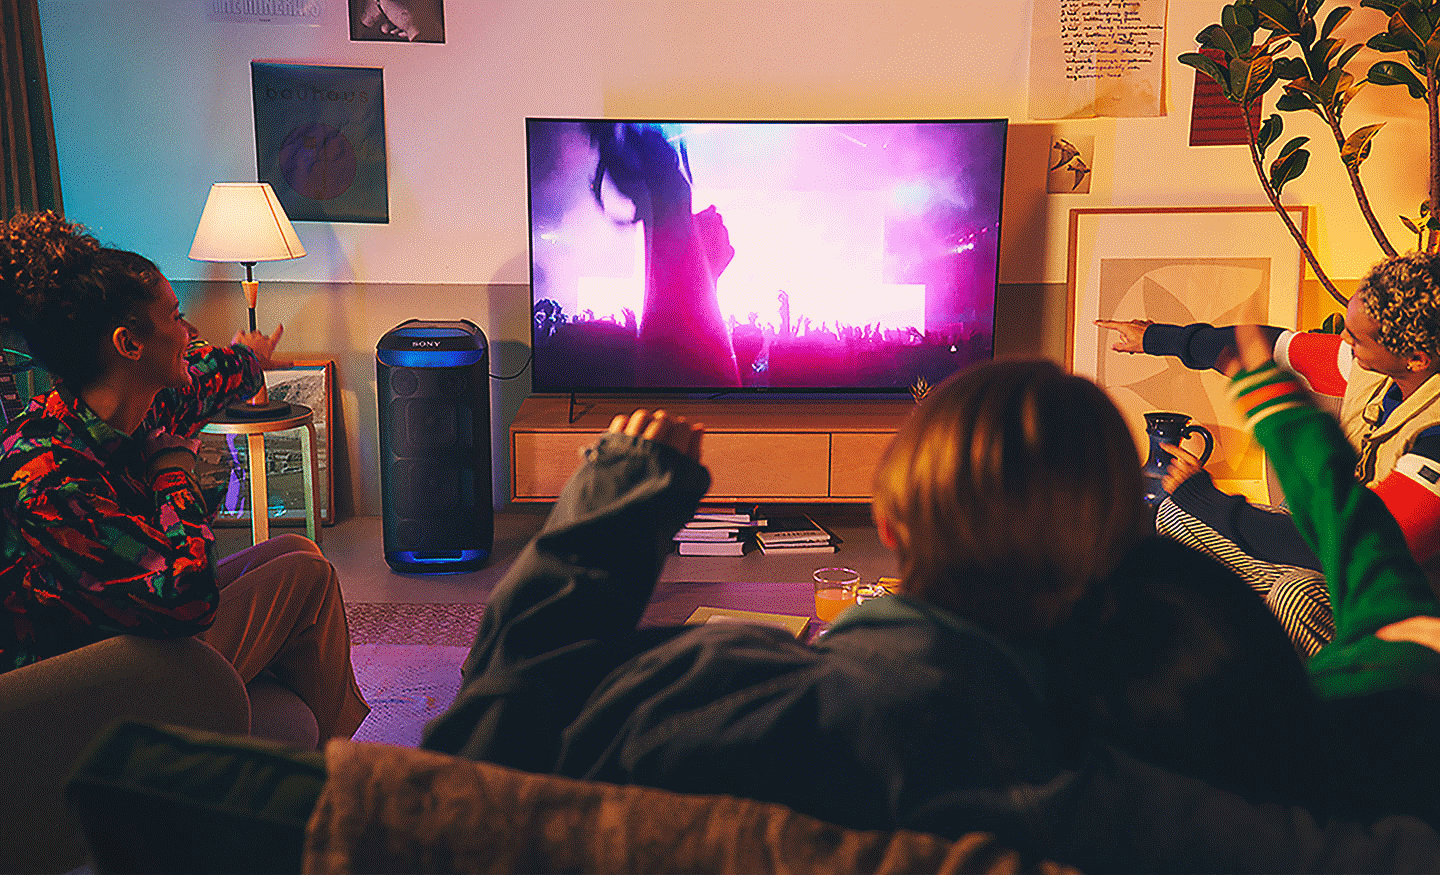 Snímek osob v obývacím pokoji sledujících koncert na televizoru s reproduktorem SRS-XV800 a modrým osvětlením vedle něj